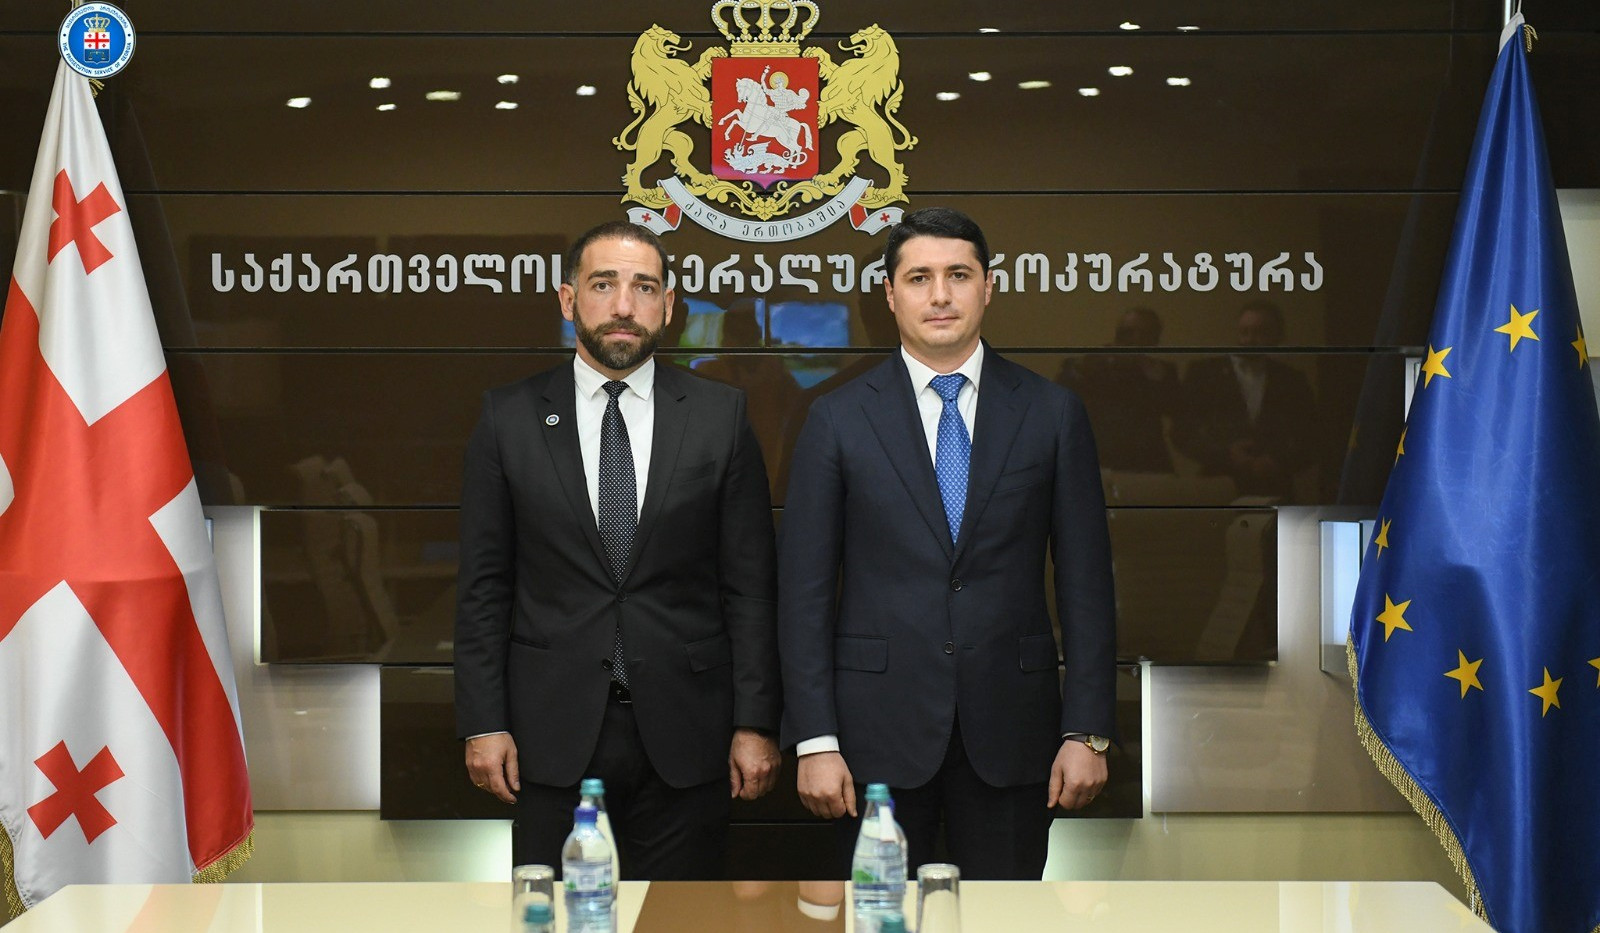 Արգիշտի Քյարամյանն ու Վրաստանի գլխավոր դատախազը քննարկել են երկու երկրների իրավապահ մարմինների համագործակցության հարցեր